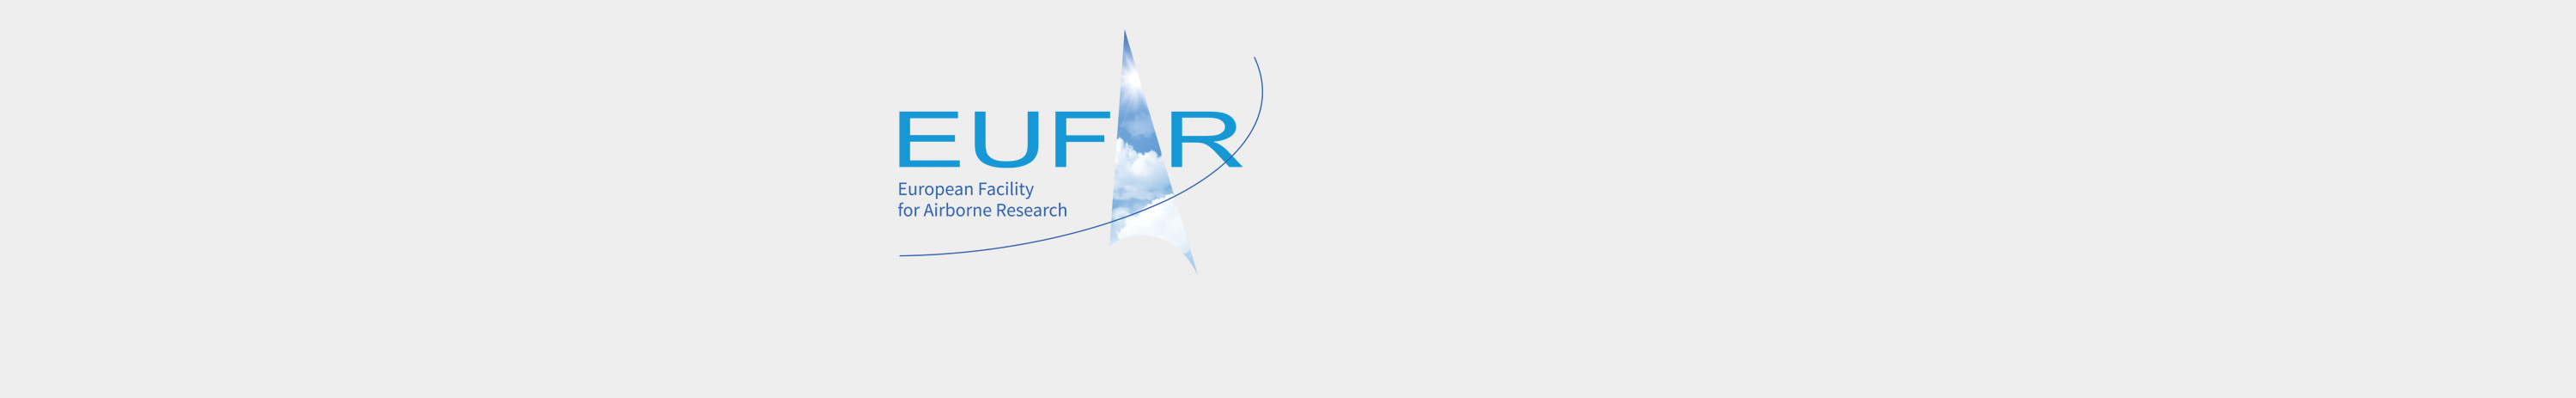 EUFAR webinars online